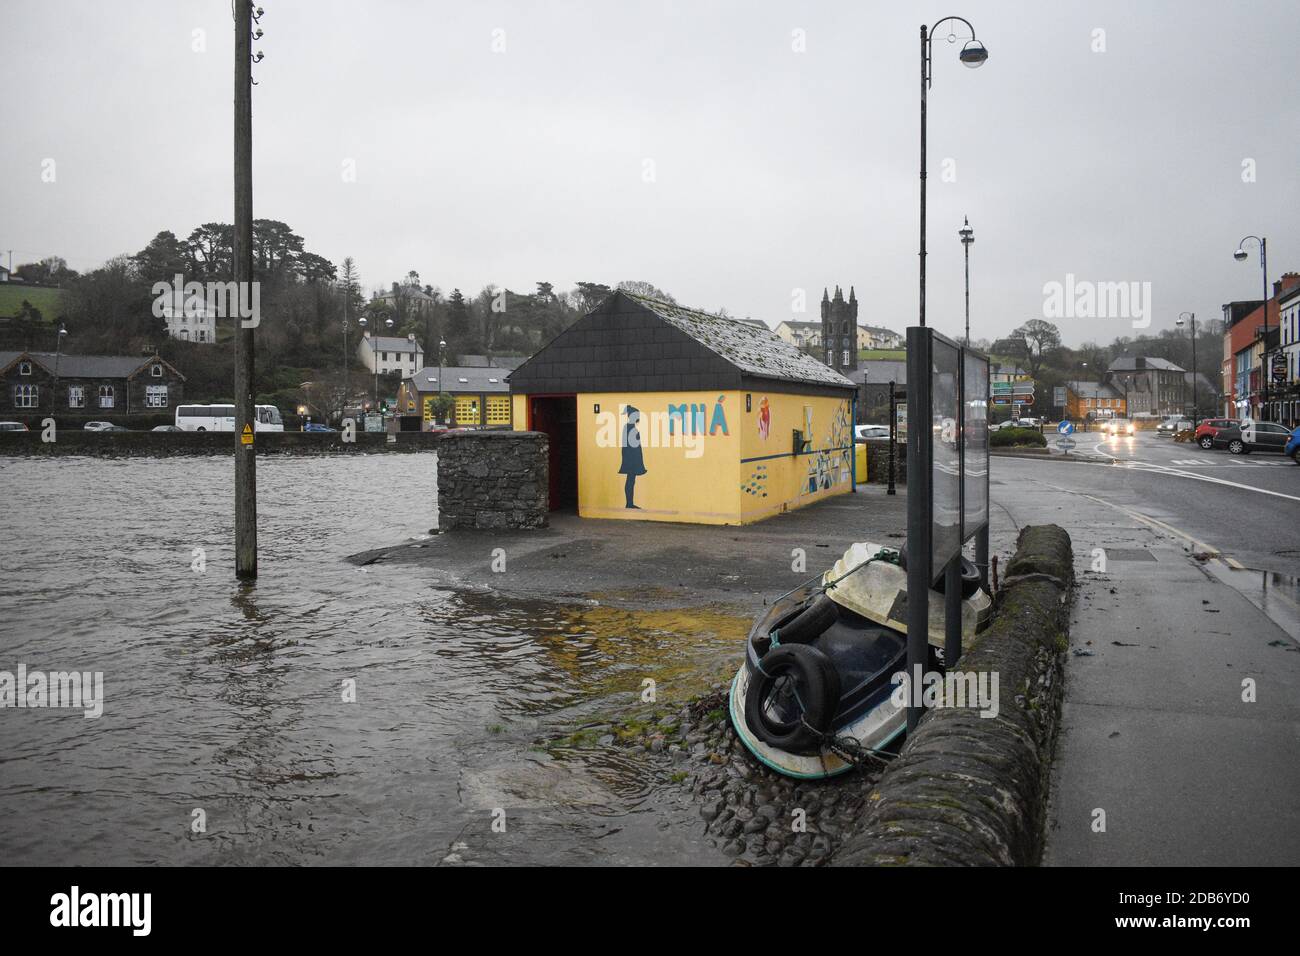 Während sich die Munster-Region auf die gelbe Wetterwarnung vorbereitet, ist die Stadt West Cork; Bantry mit einem hohen Risiko von Flutkatastrophen verbunden Stockfoto